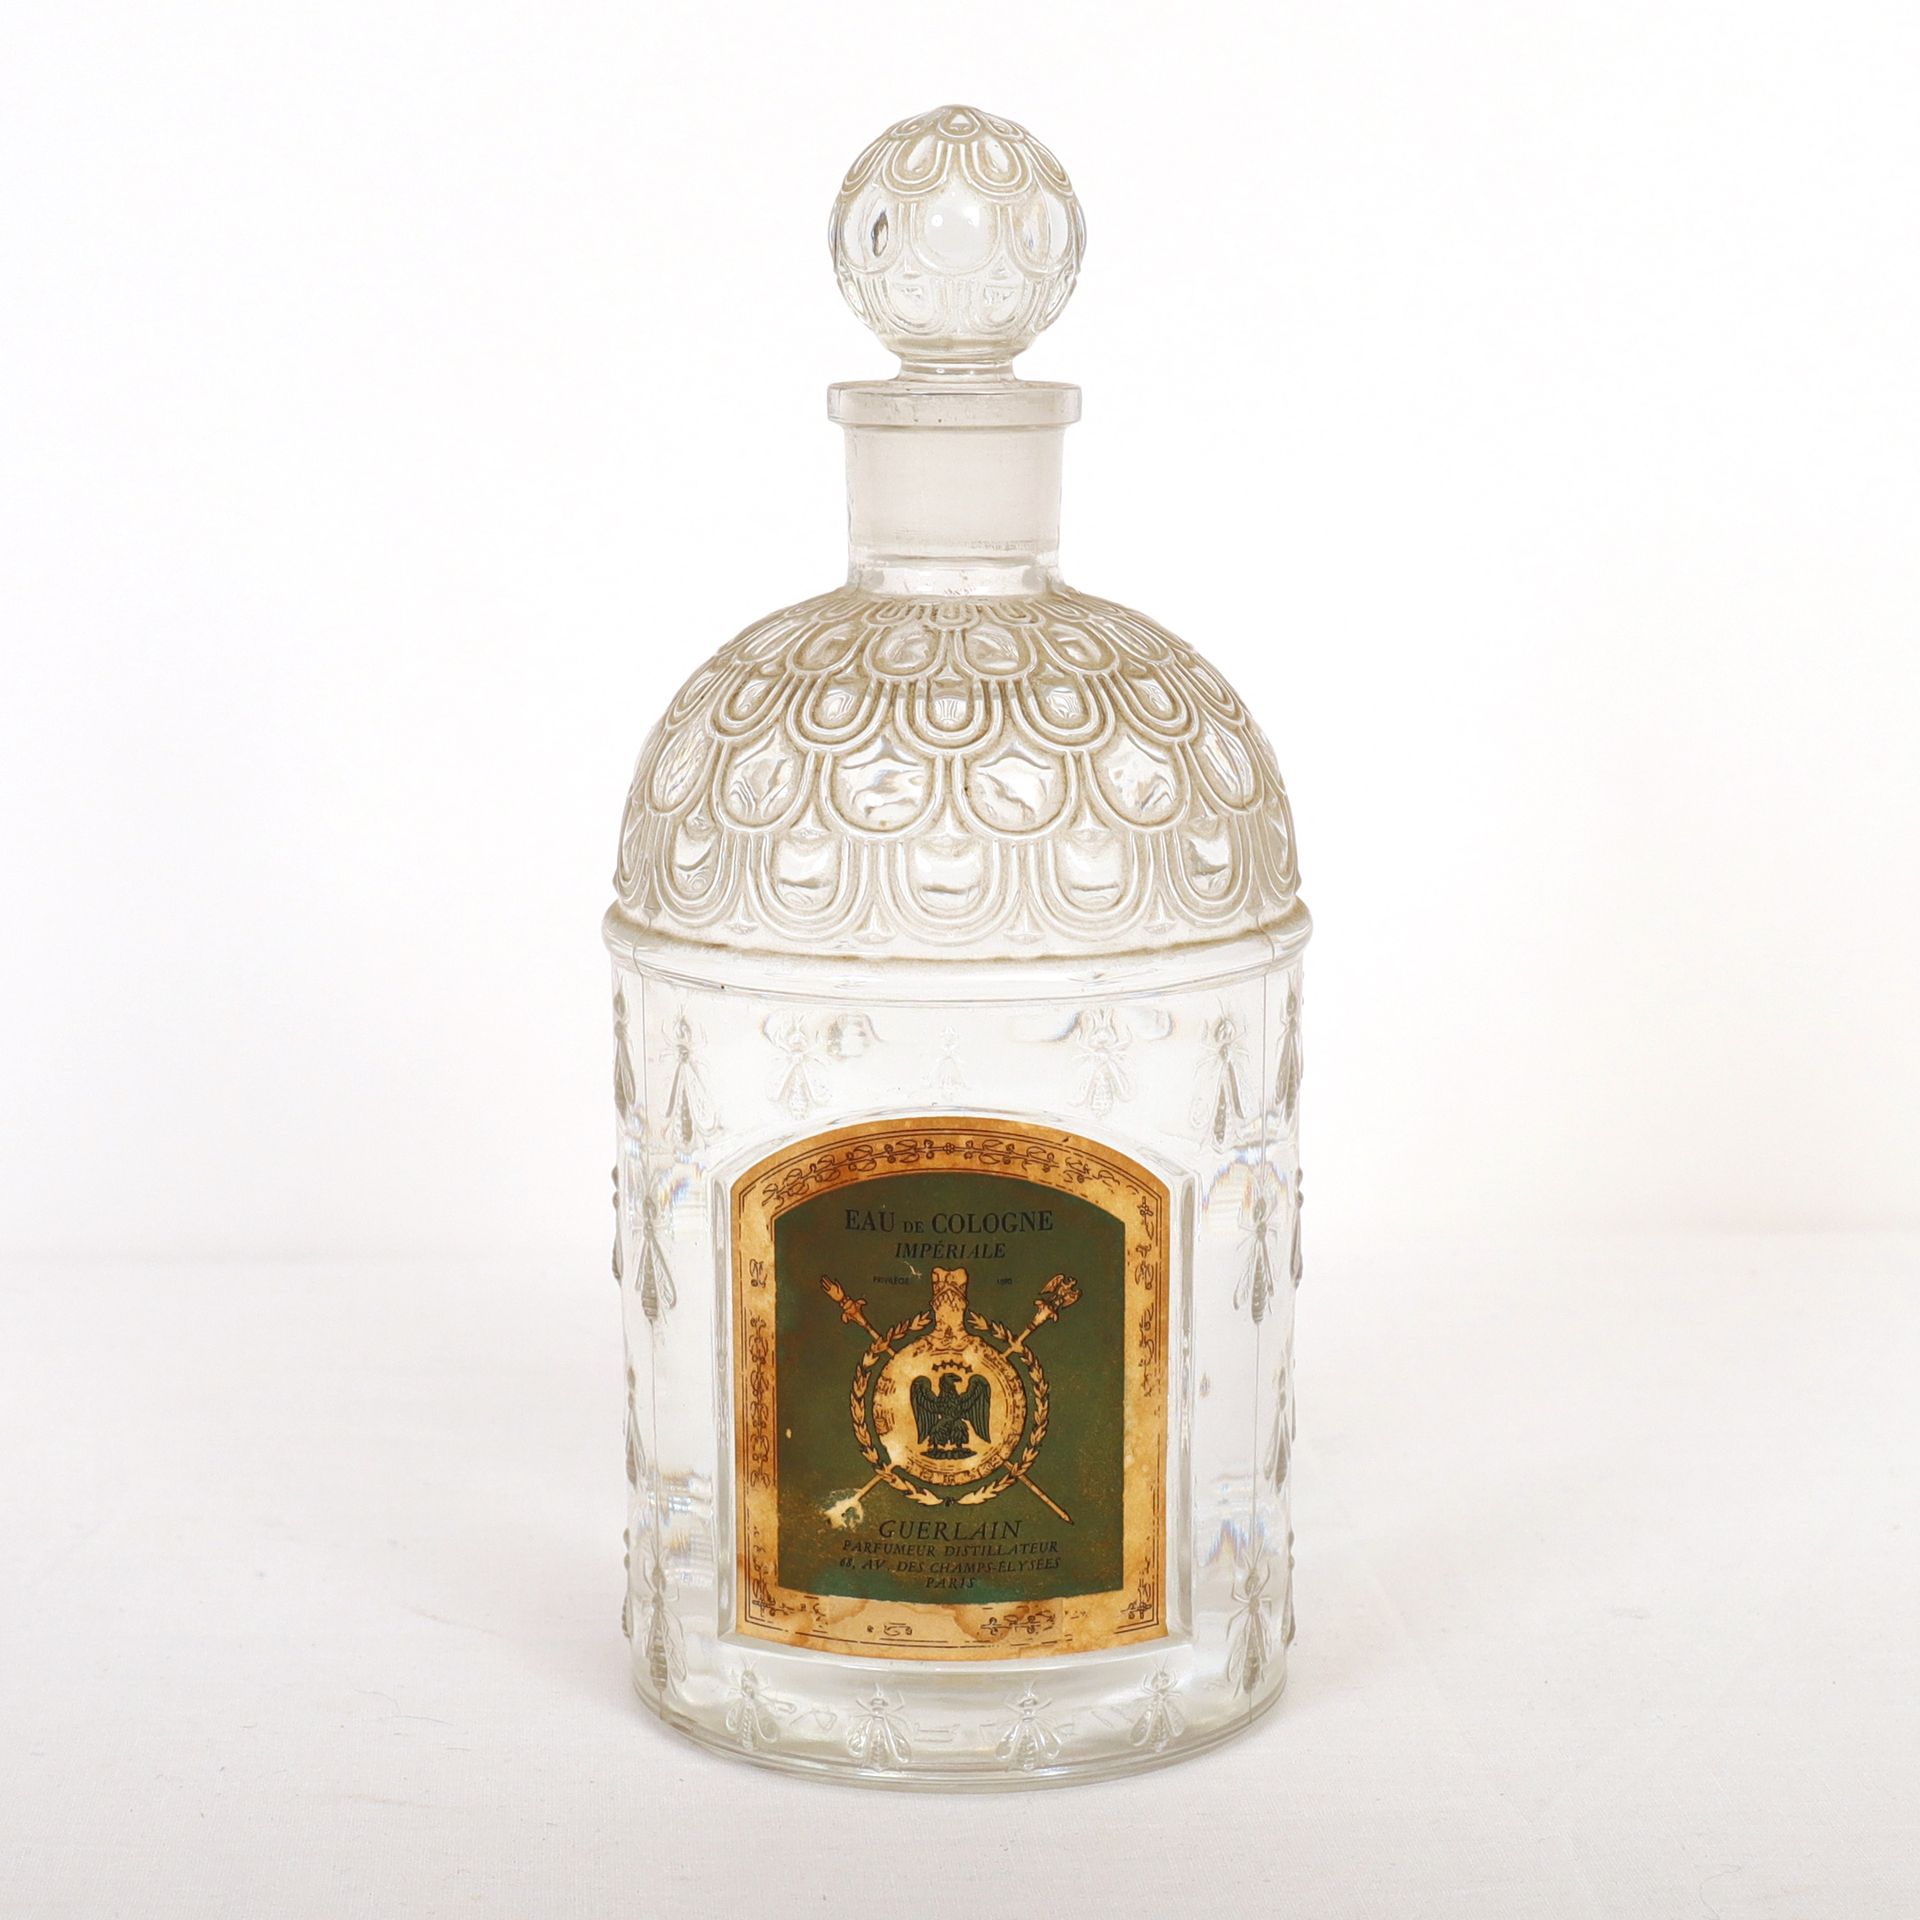 Null 巨大的玻璃瓶，带蜜蜂的GUERLAIN瓶

帝国古龙水

法国制造

假人

高：23.5厘米